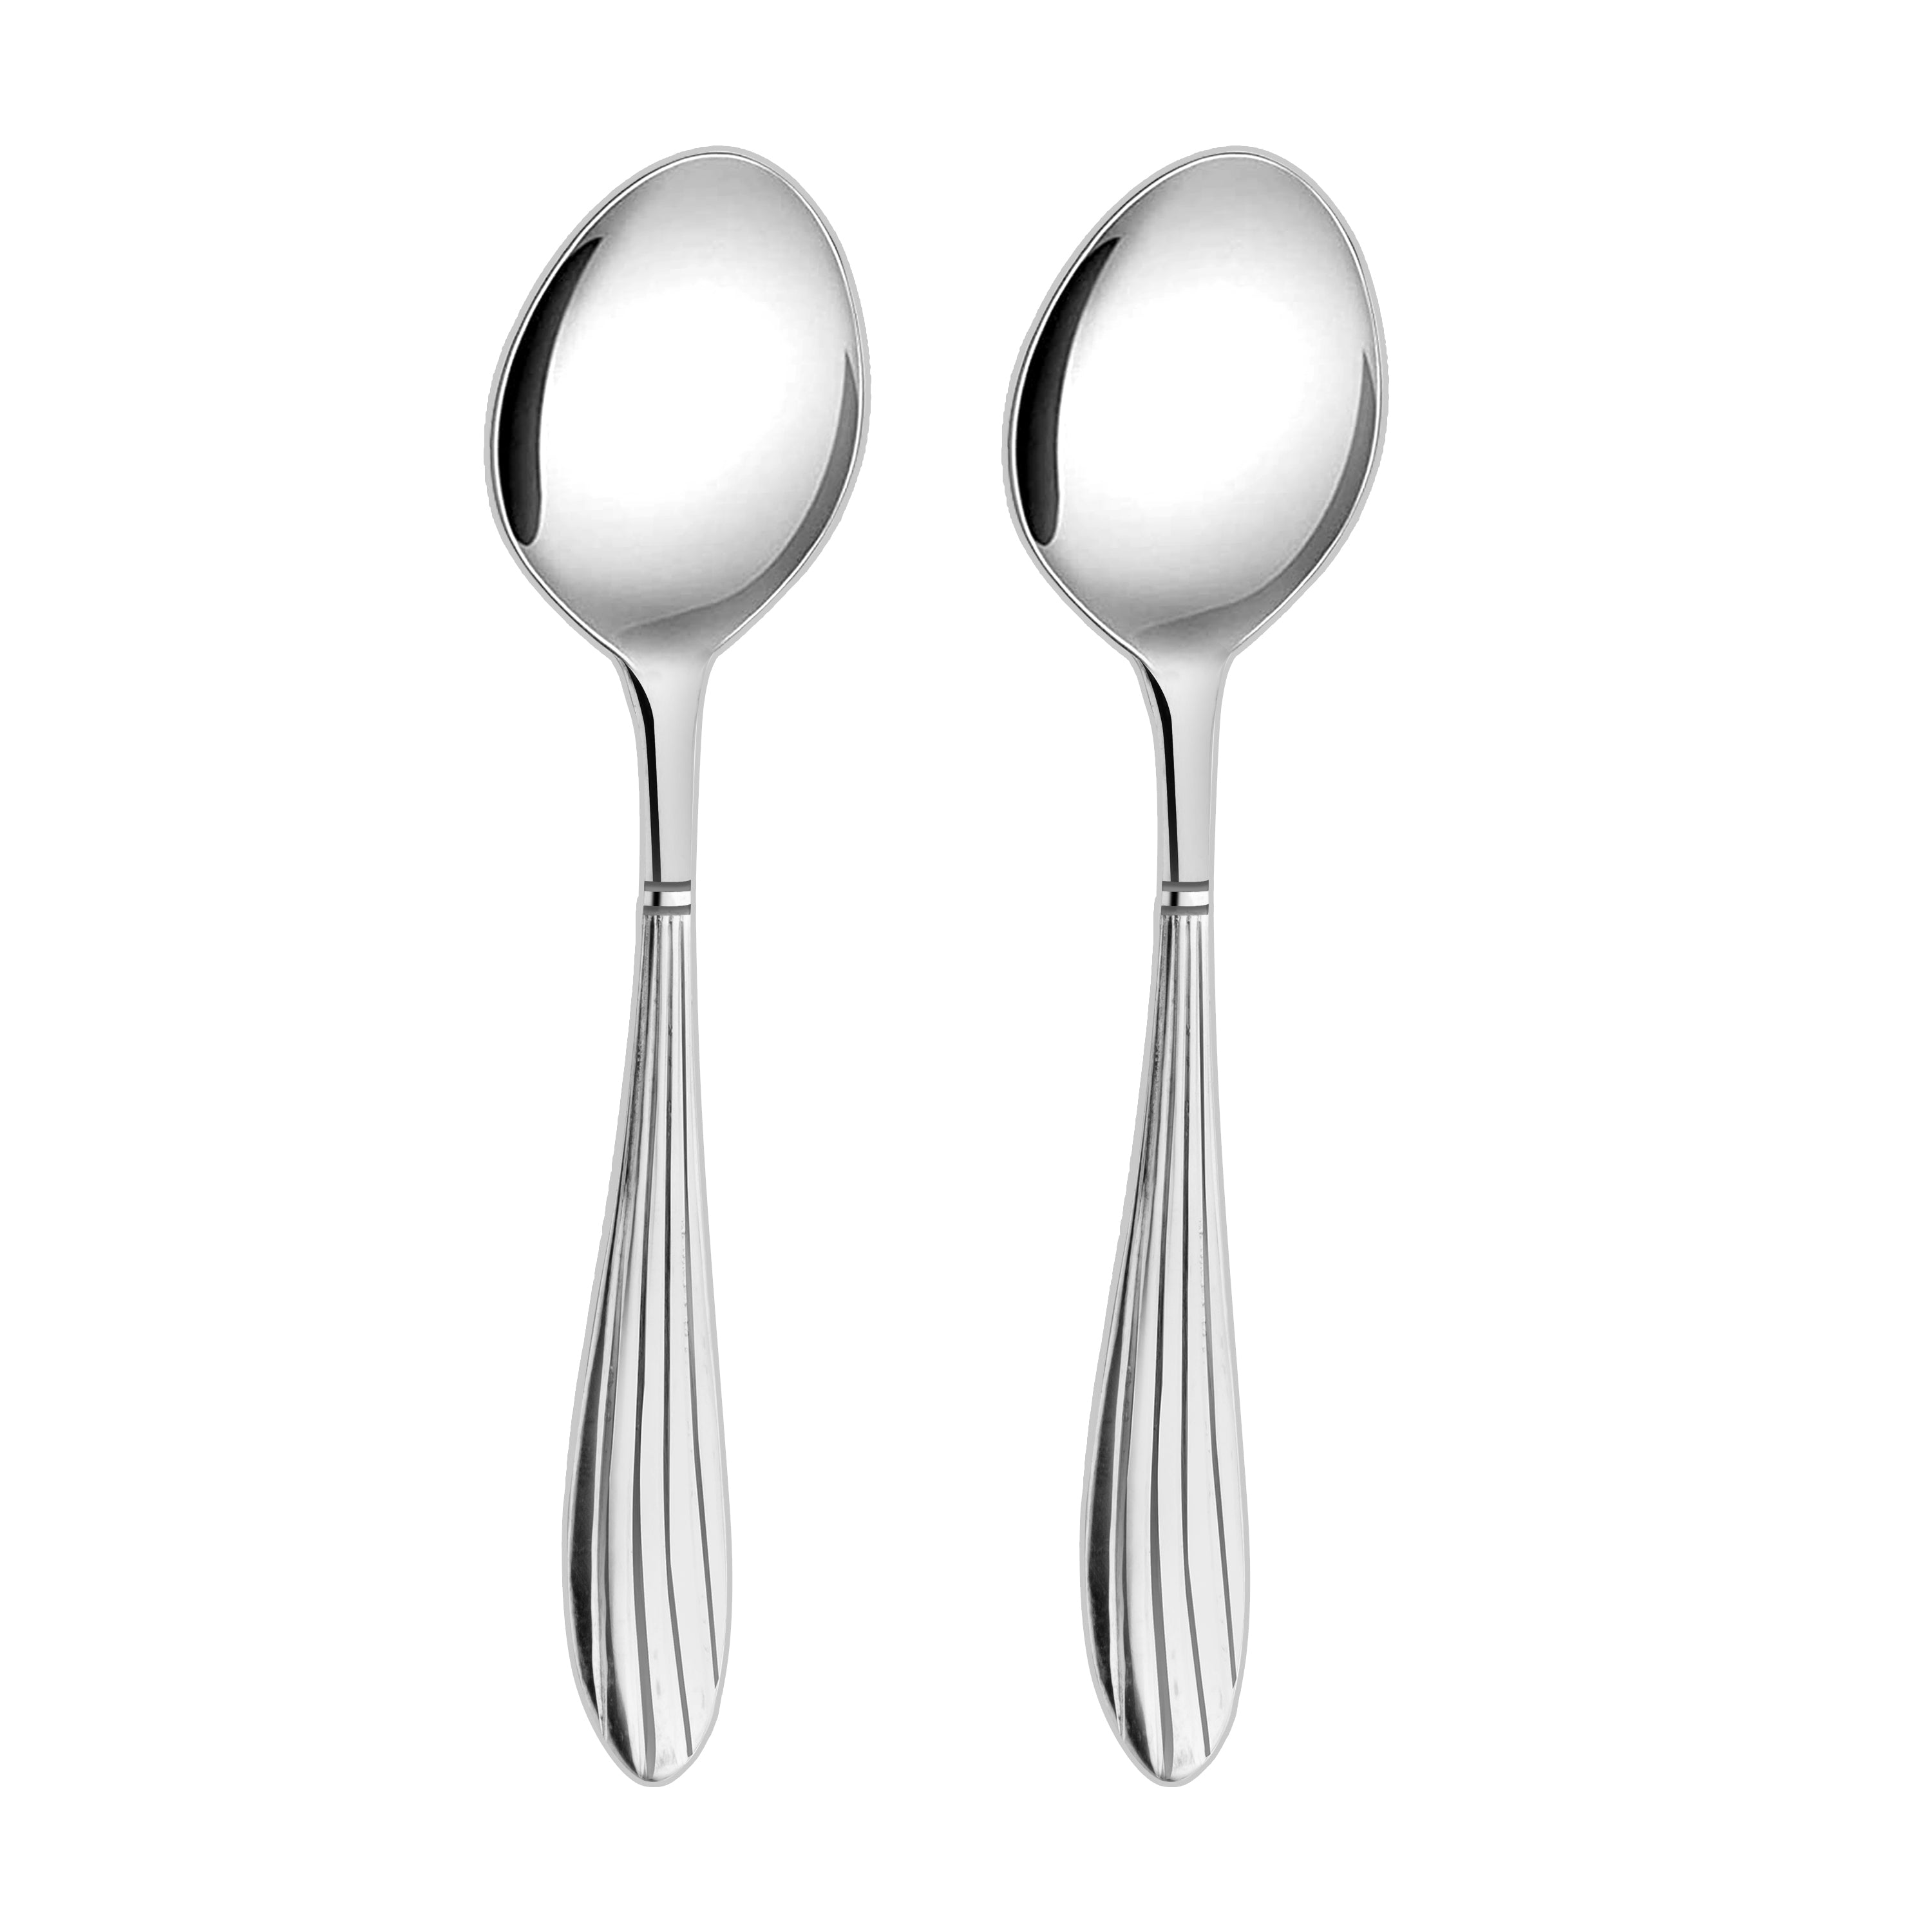 Arias Sysco Serving Spoon Set of 2 (Silver)